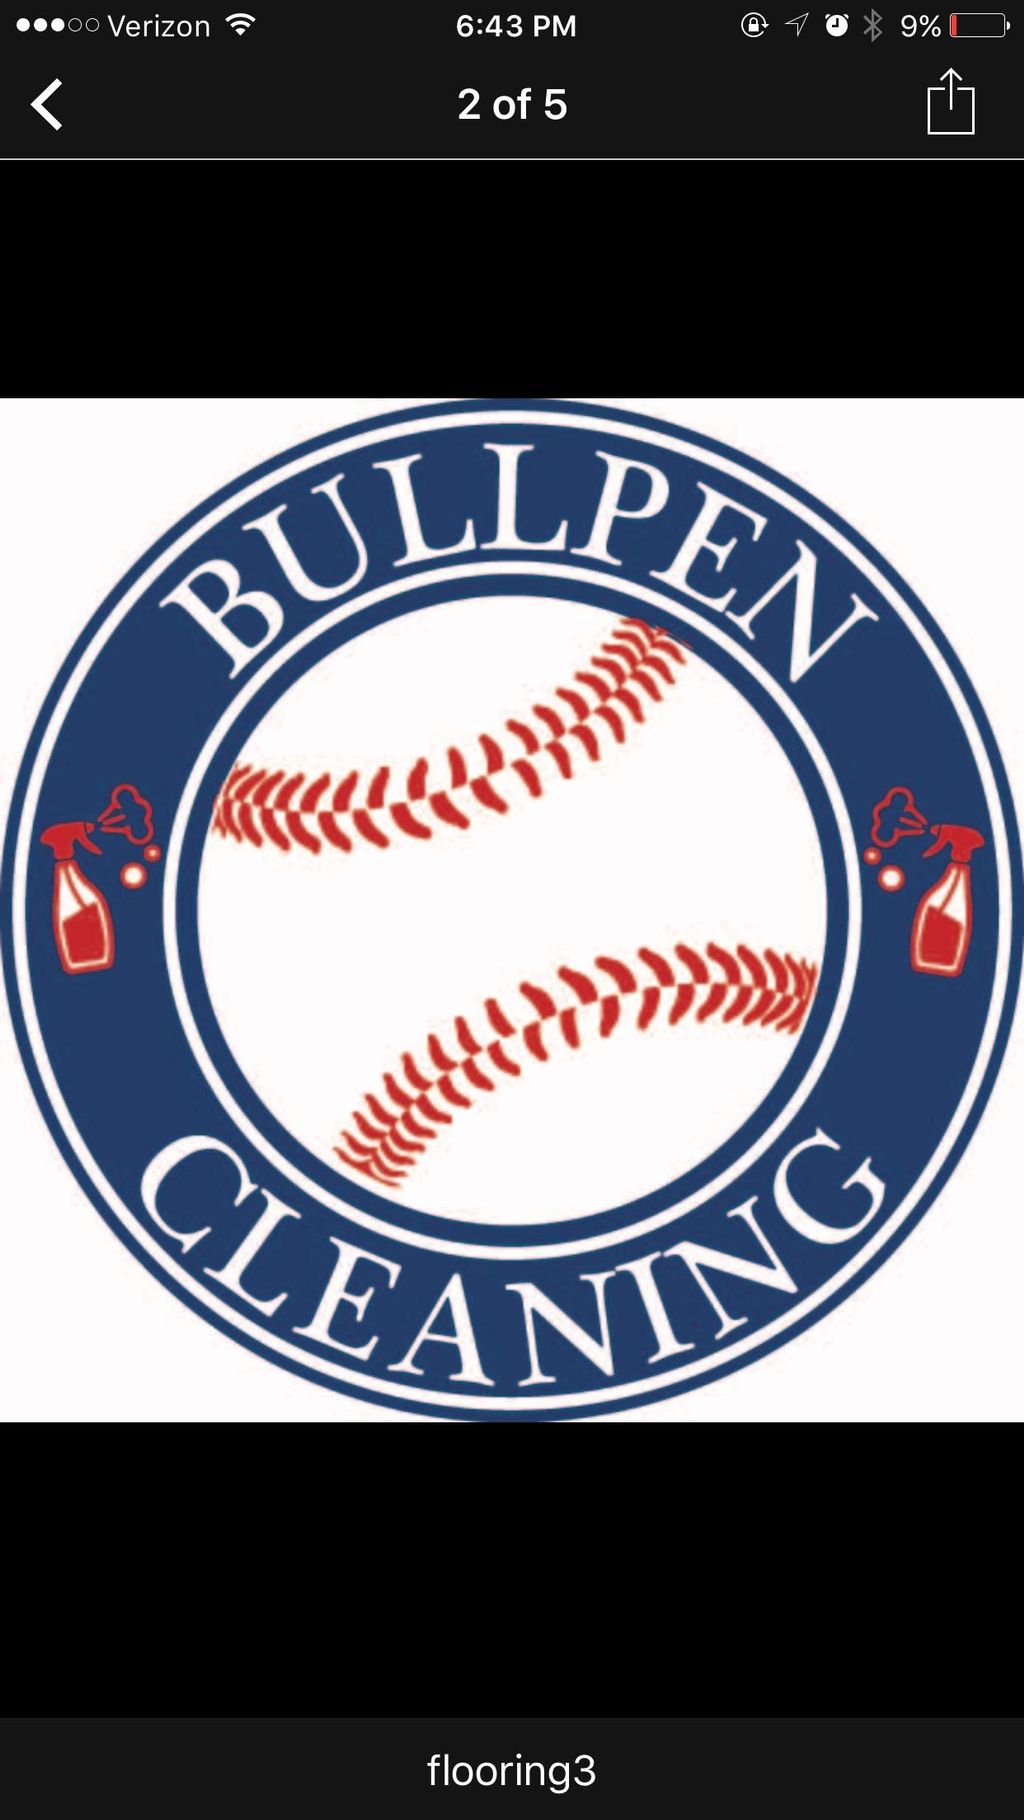 BullPen Cleaning